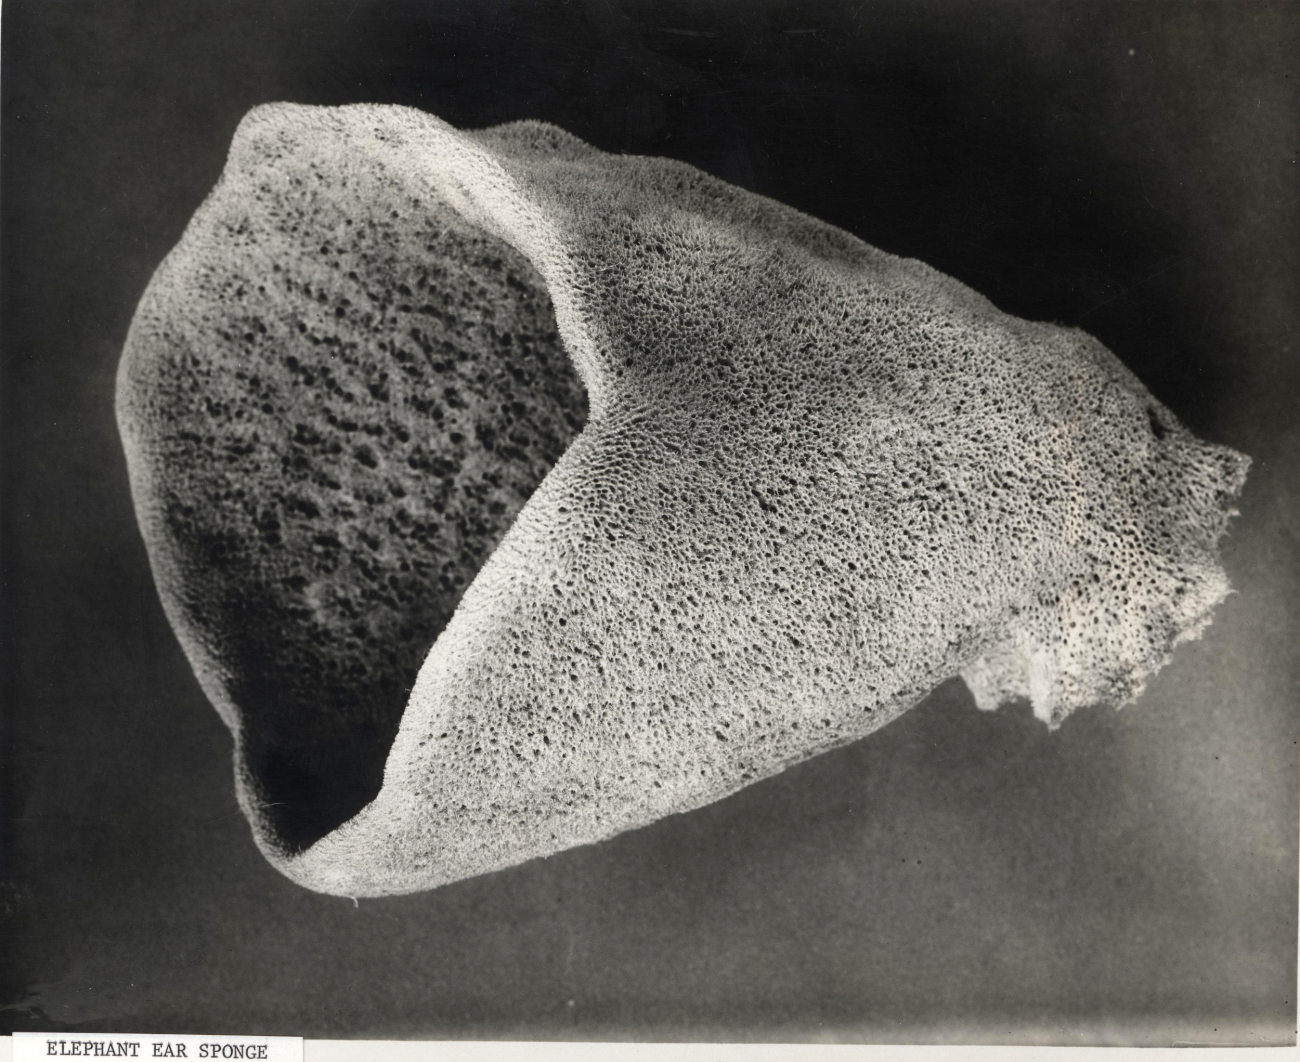 Elephant ear sponge - specimen from Mediterranean Sea